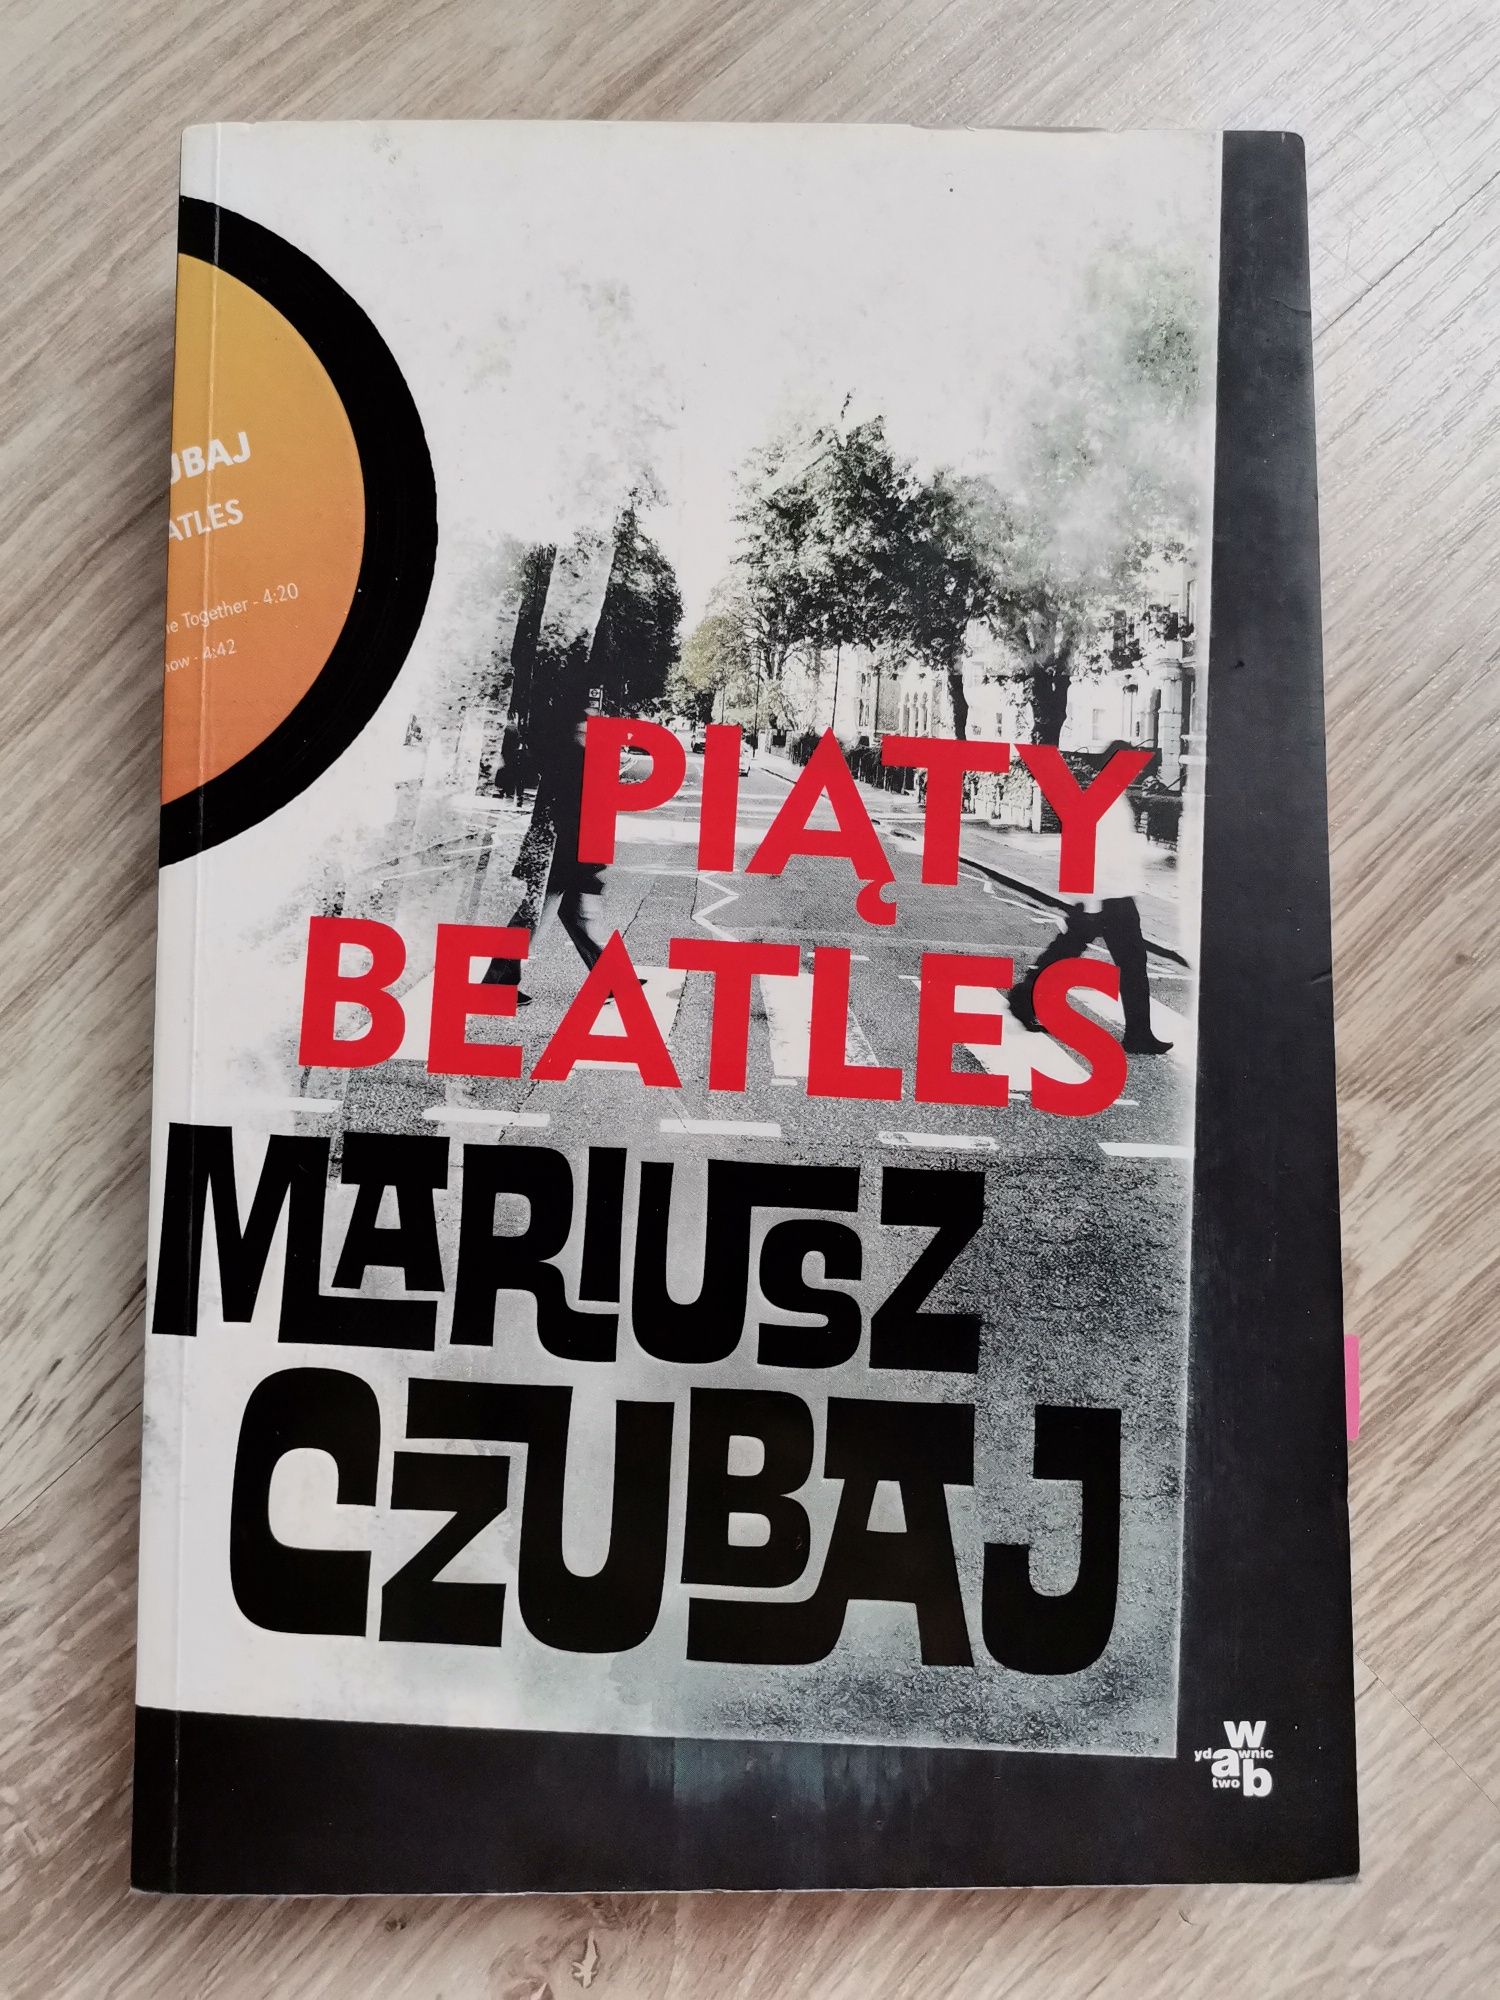 Mariusz Czubaj, Piąty Beatles